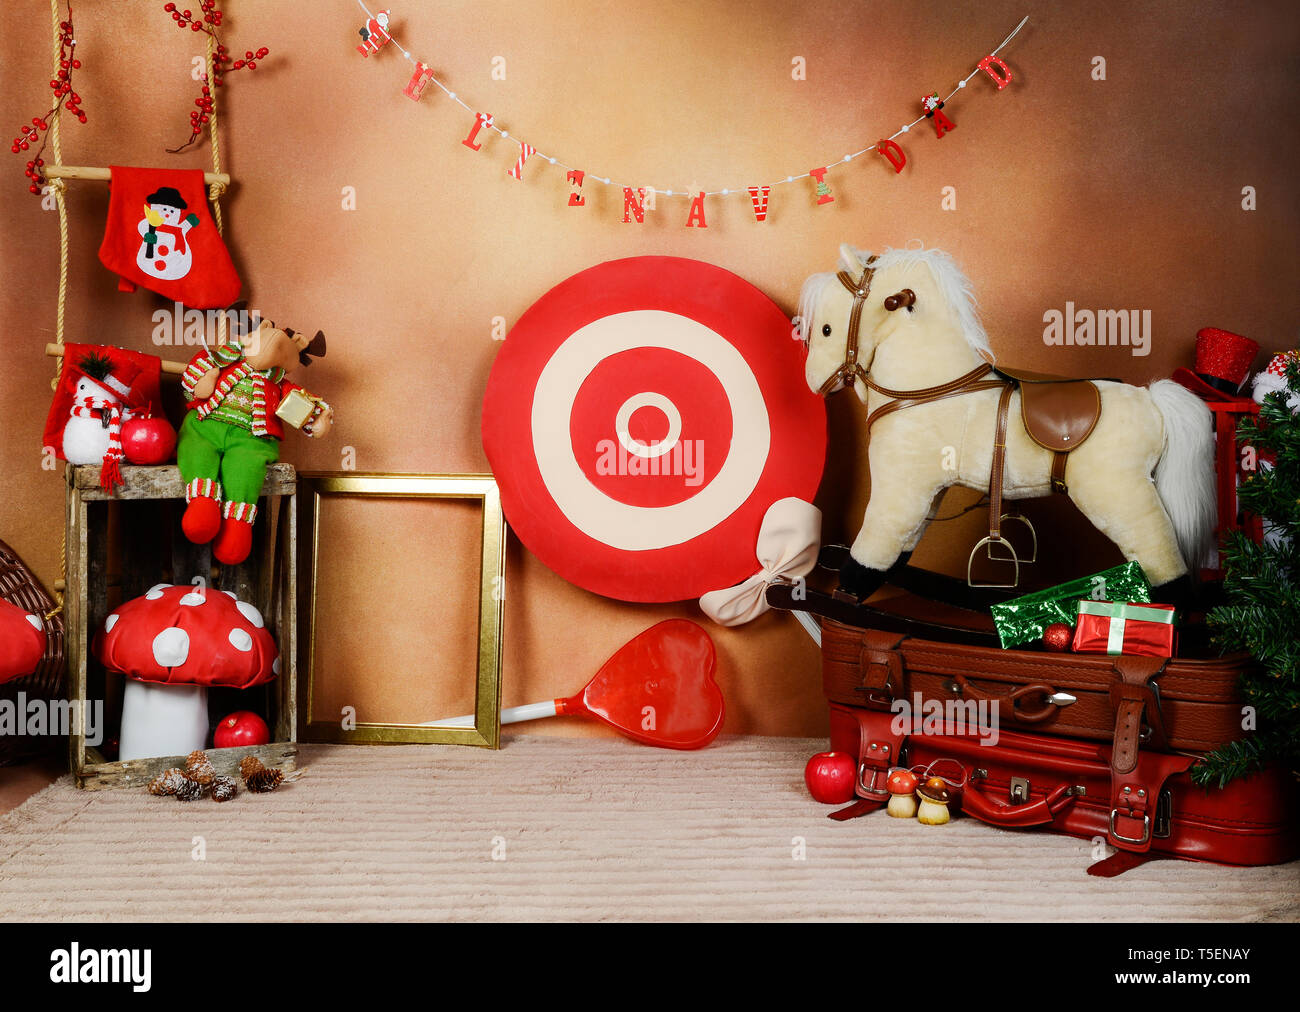 Weihnachtsdekoration mit Ornamenten und bunten Spielzeugen. Stockfoto